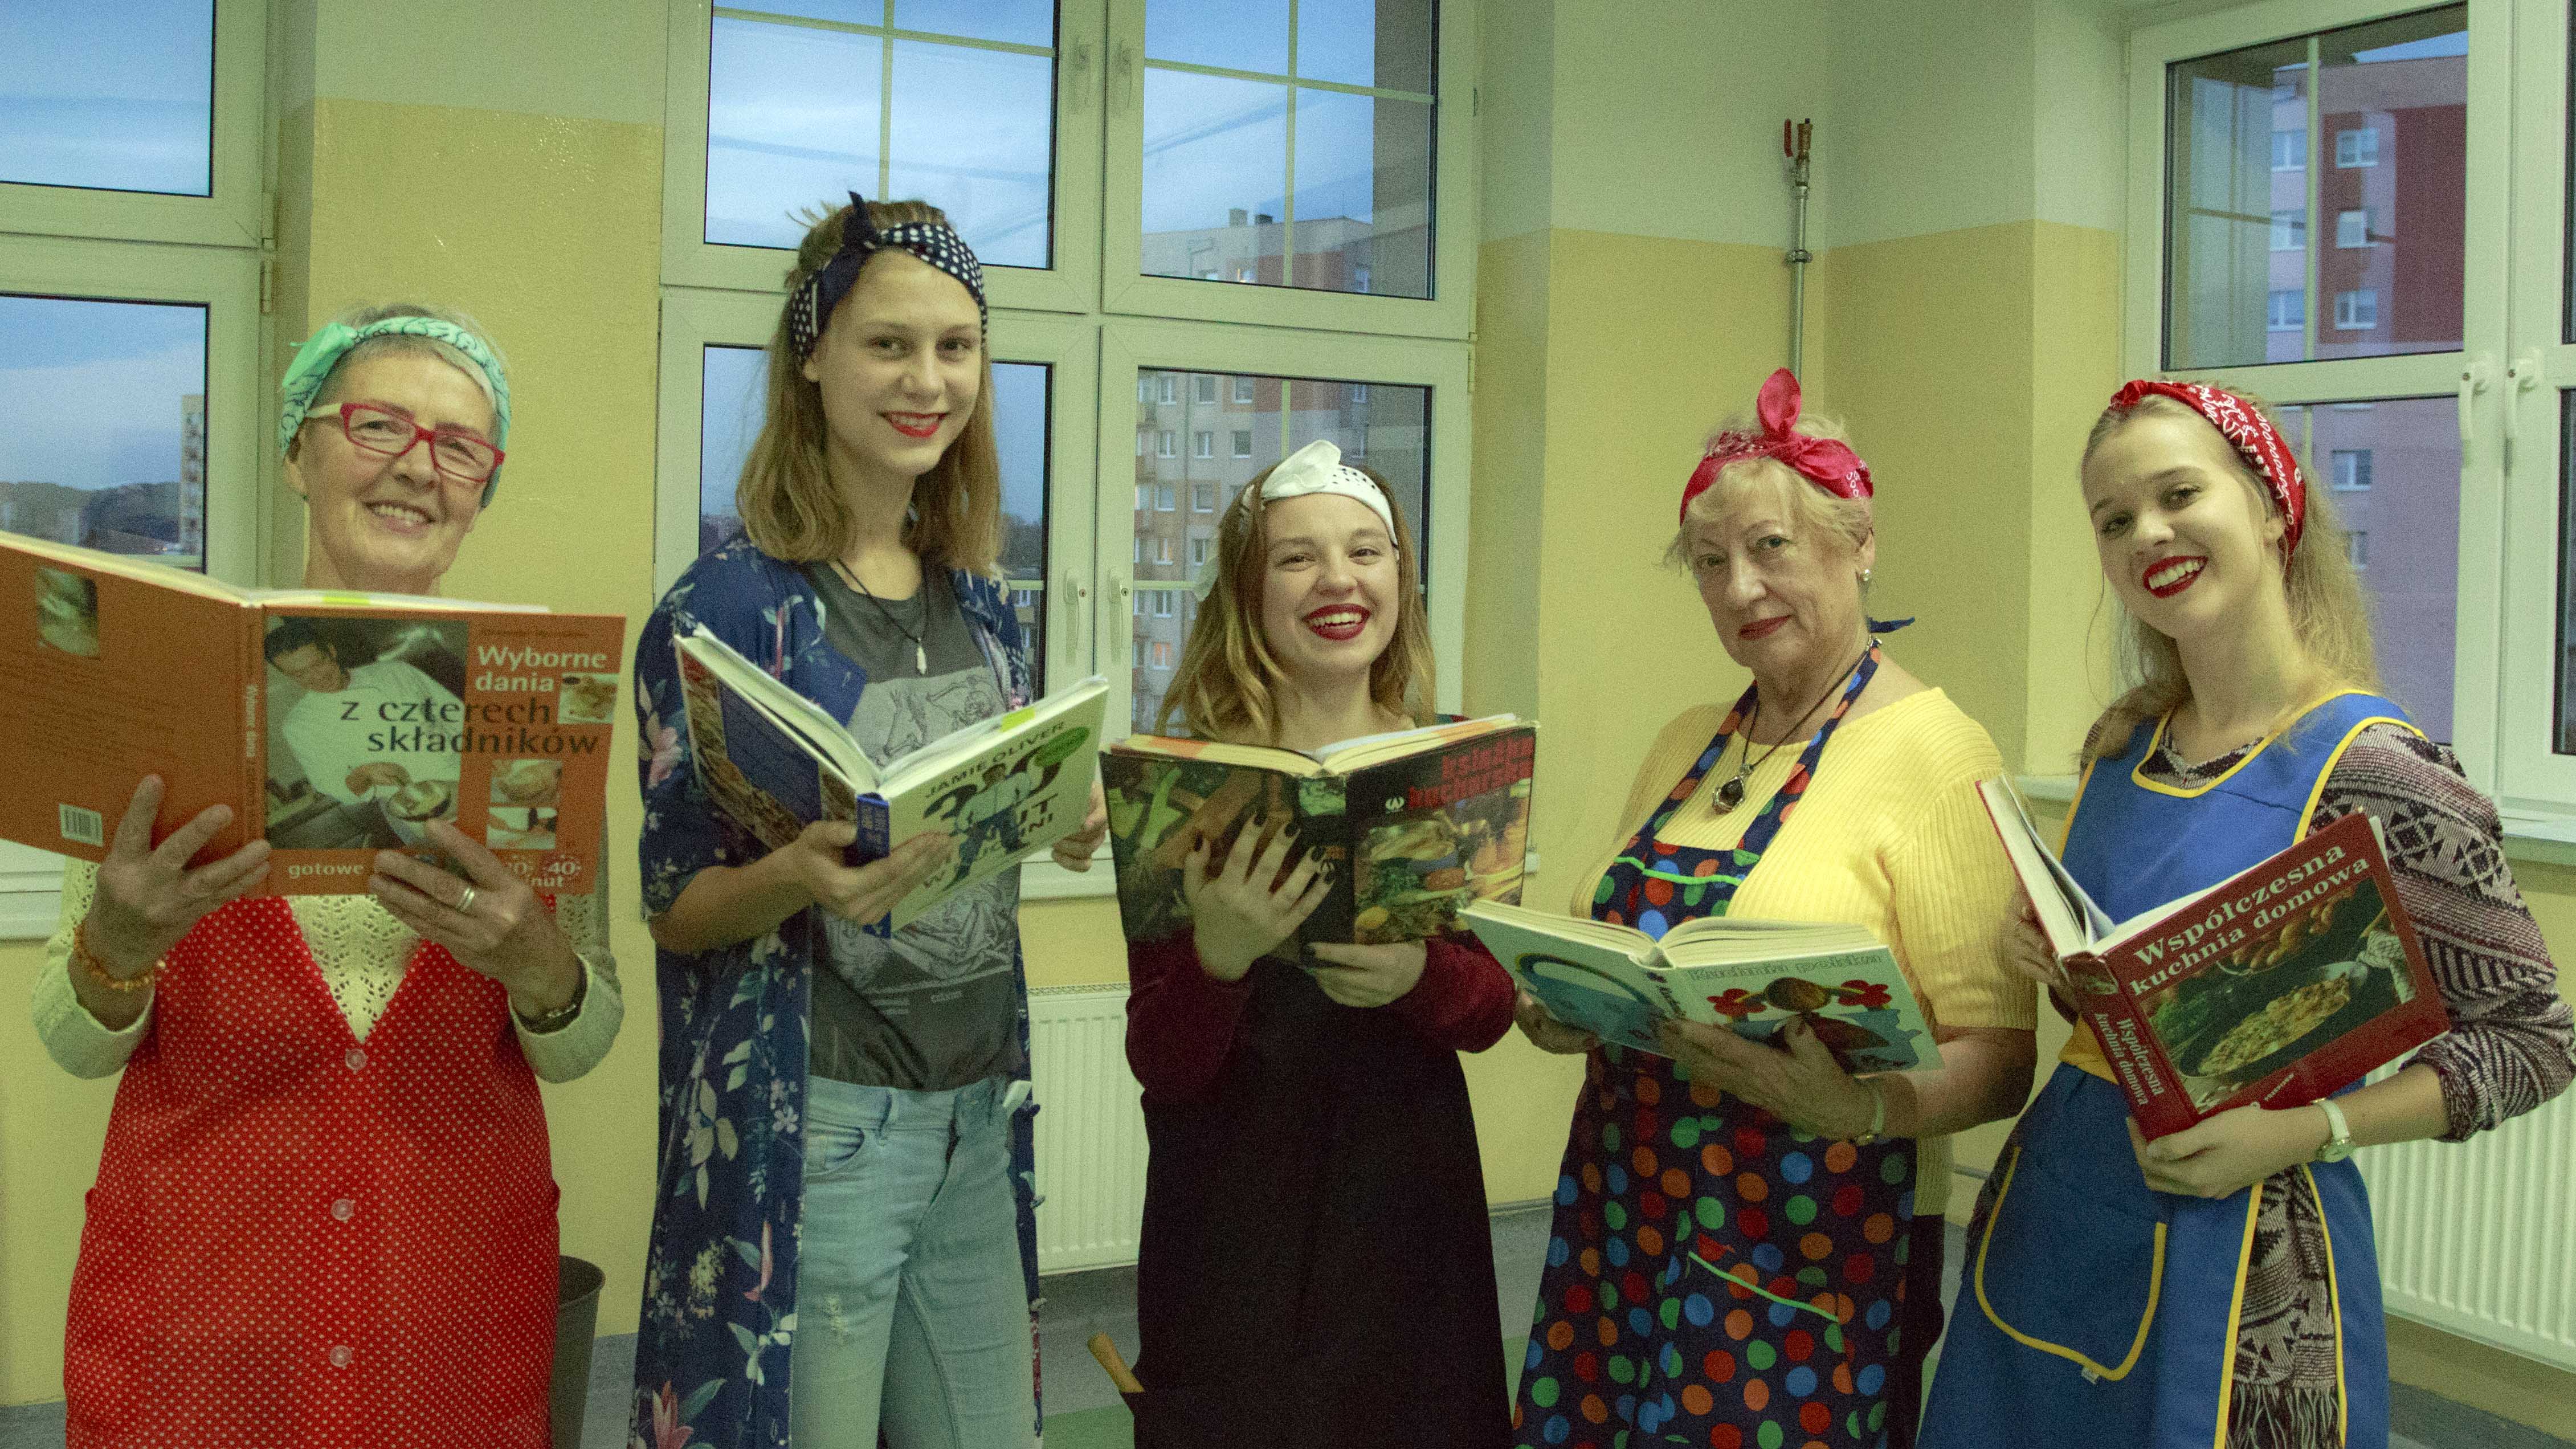 zdjęcie z projektu Dzwięczące wieżowce. Pięć aktorek w fartuchach kuchennych trzymających przed sobą książki kucharskie.